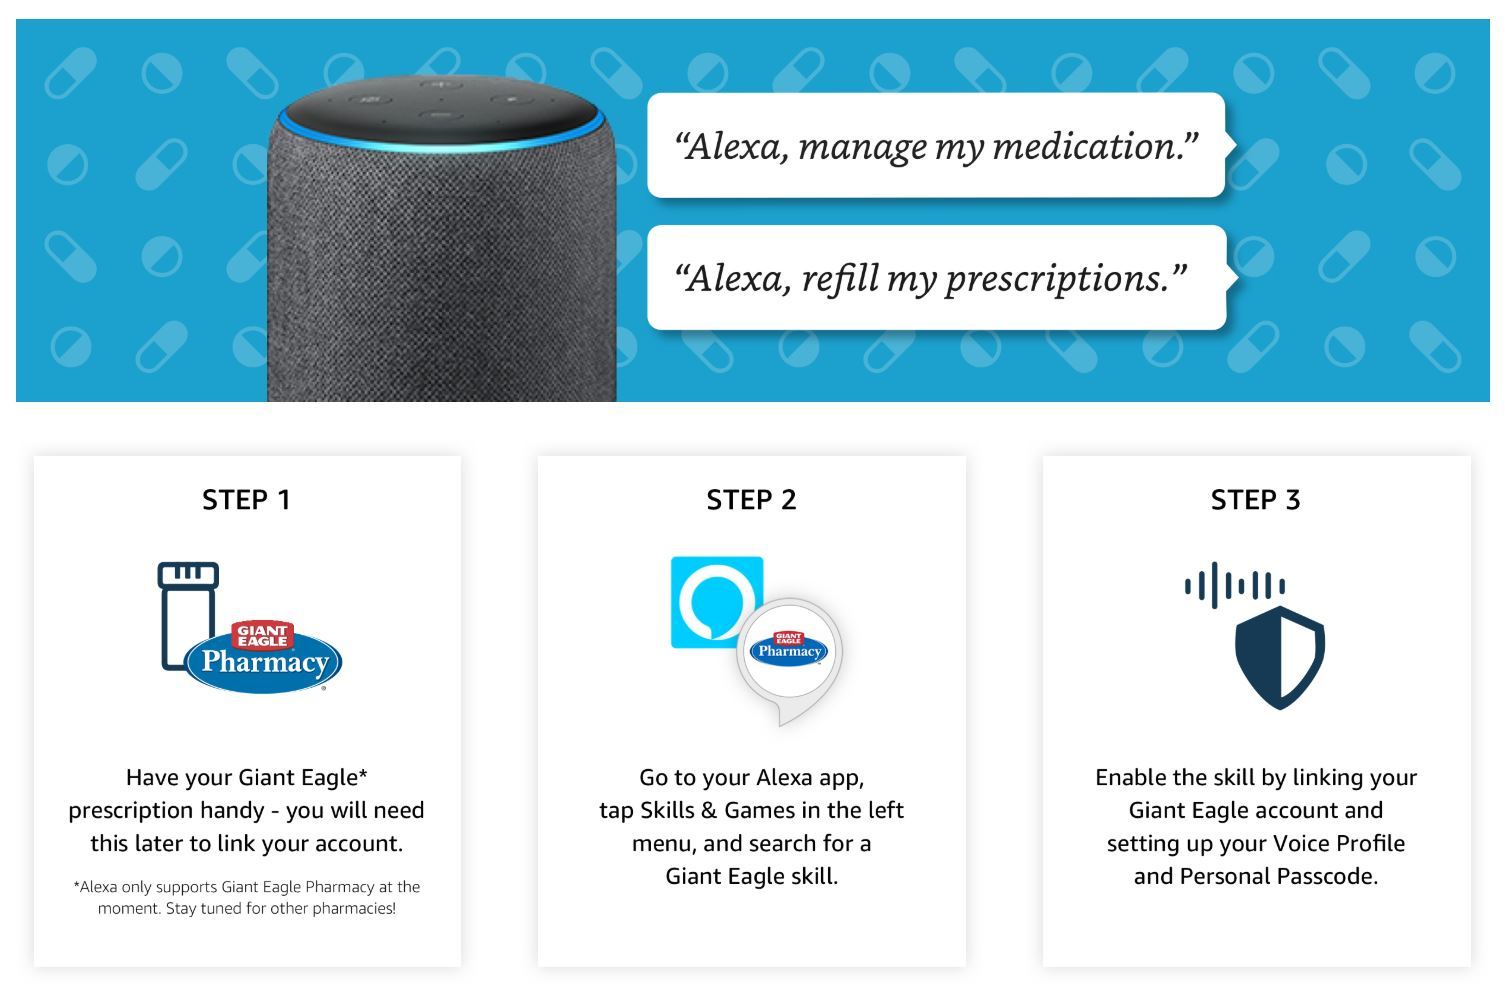 Amazon.com、Alexaによる服薬リマインダーを大手薬局チェーンと連携して提供